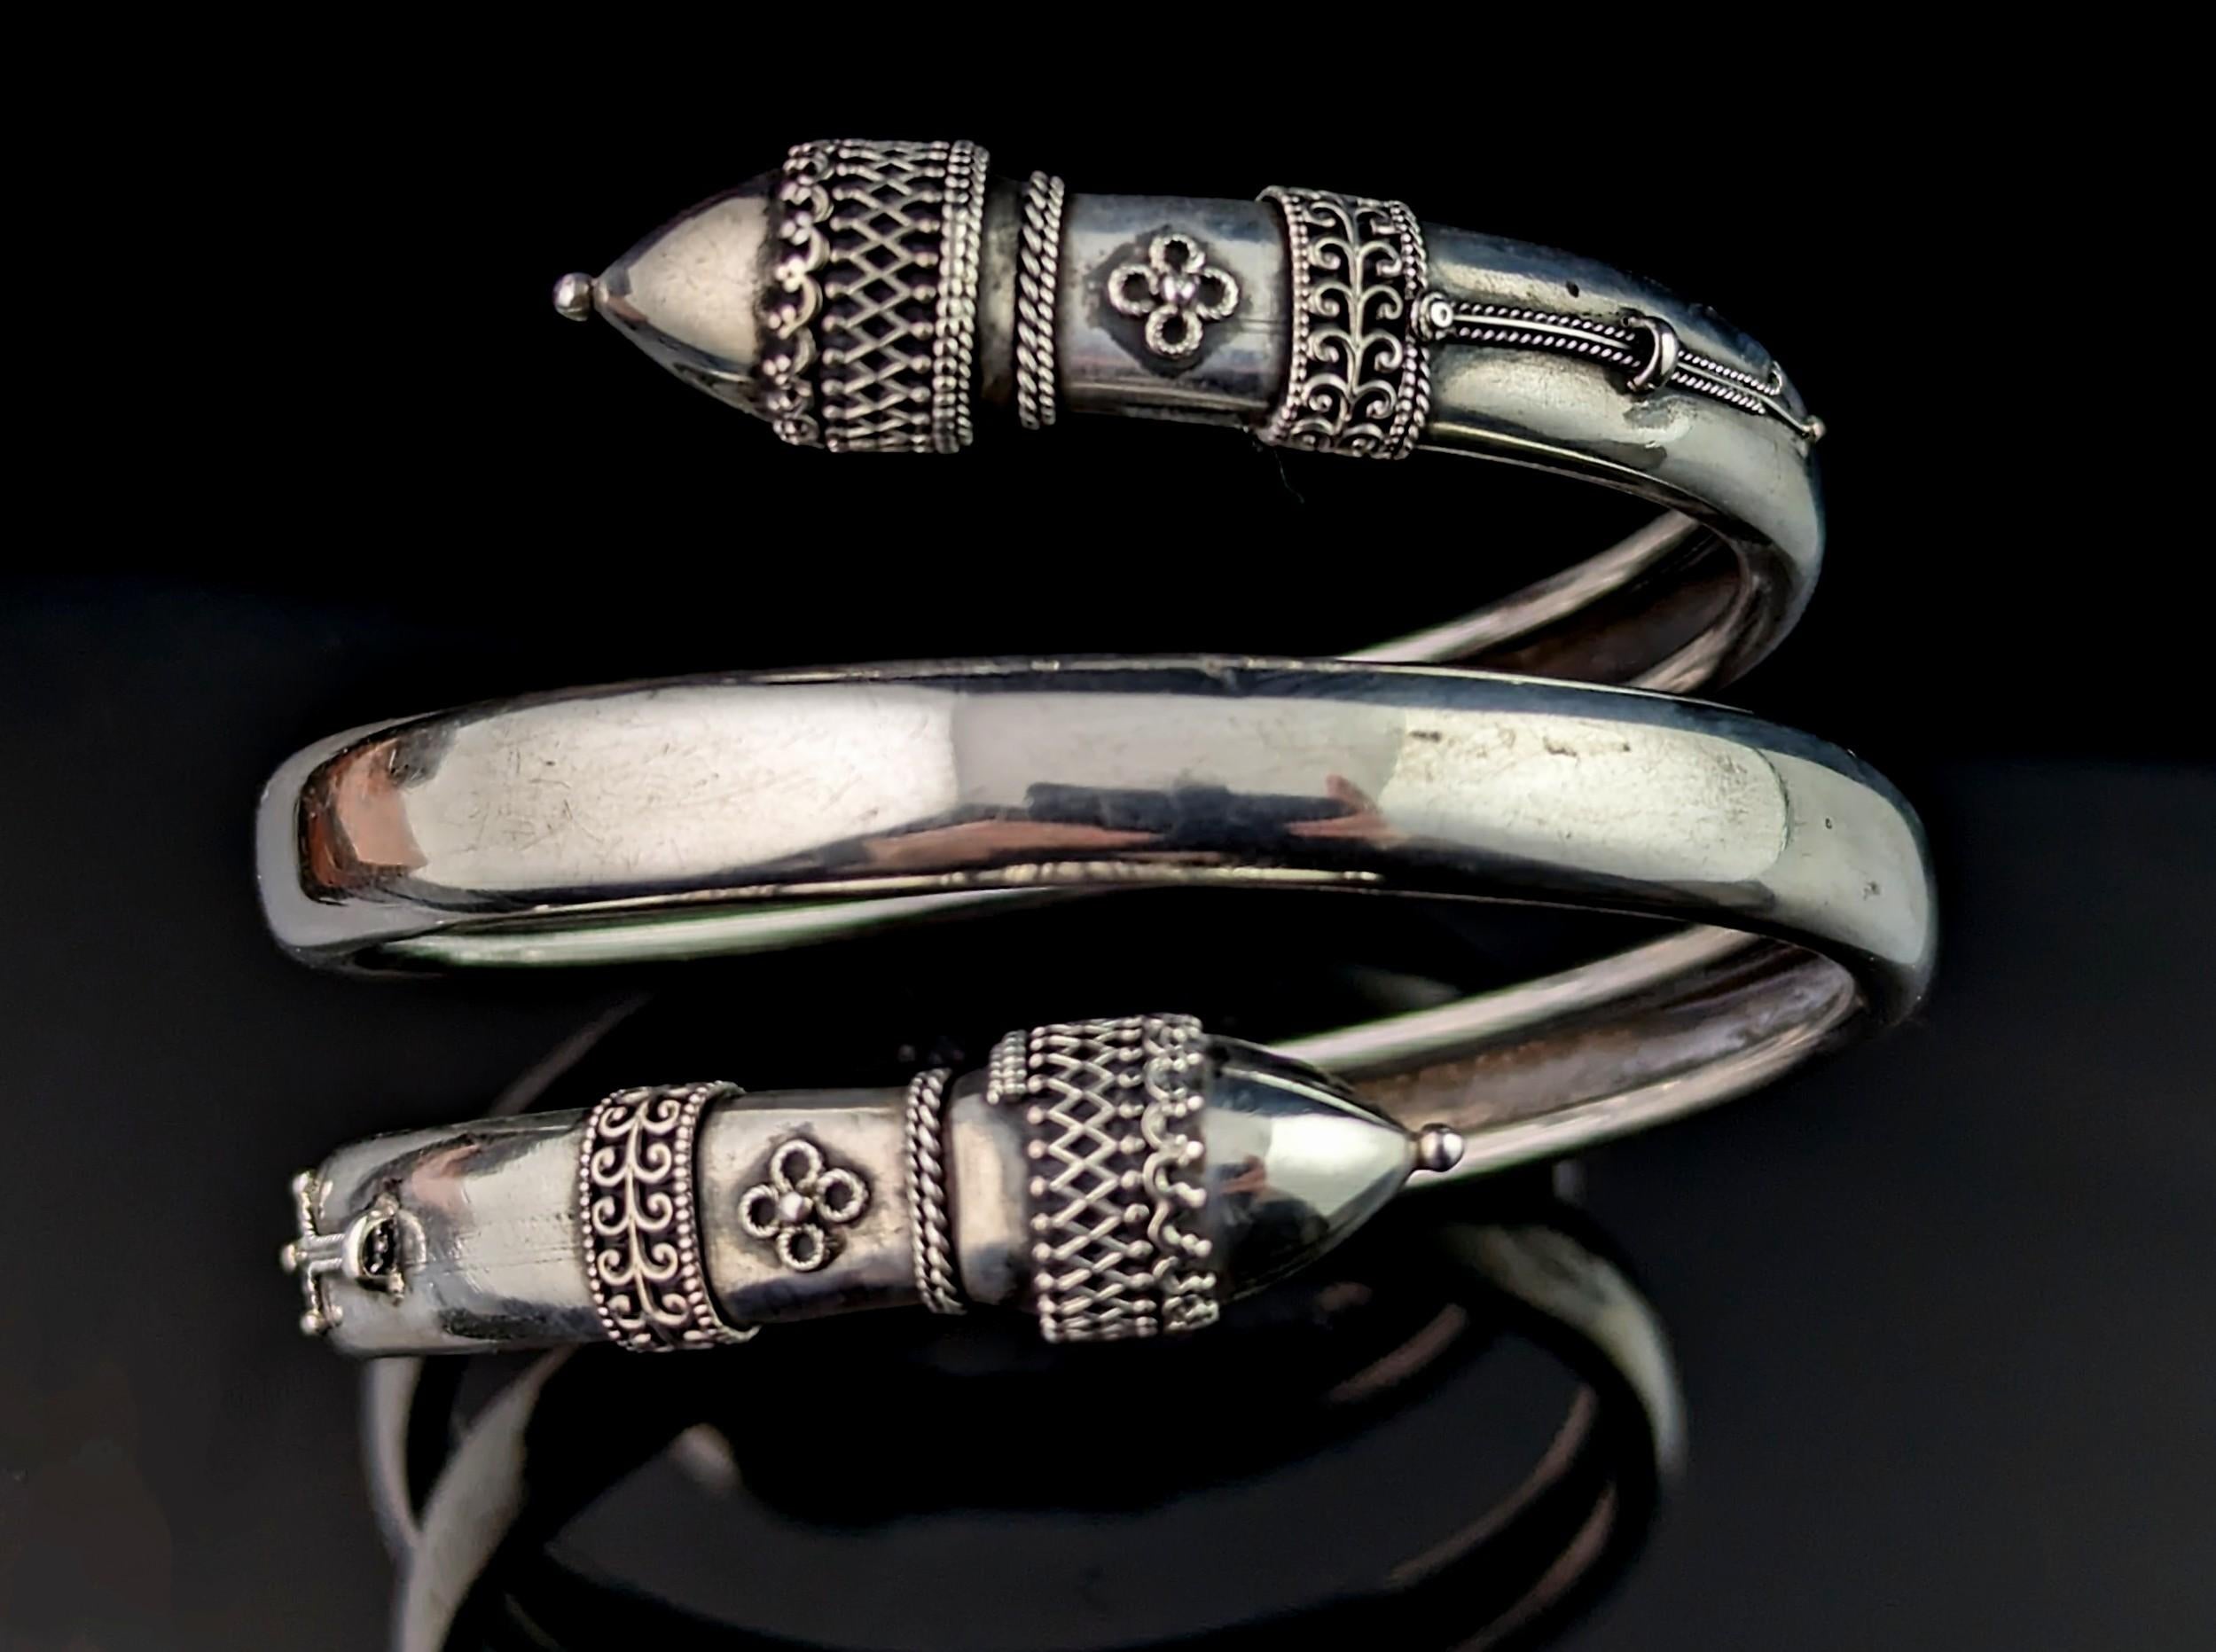 Dieser wunderschöne, antike Bypass-Armreif aus viktorianischem Silber wird Sie einfach verzaubern.

Der Armreif ist im Stil der etruskischen Wiedergeburt gestaltet und hat dekorative Endstücke mit aufgesetztem Silberdraht. Der Armreif ist dreifach